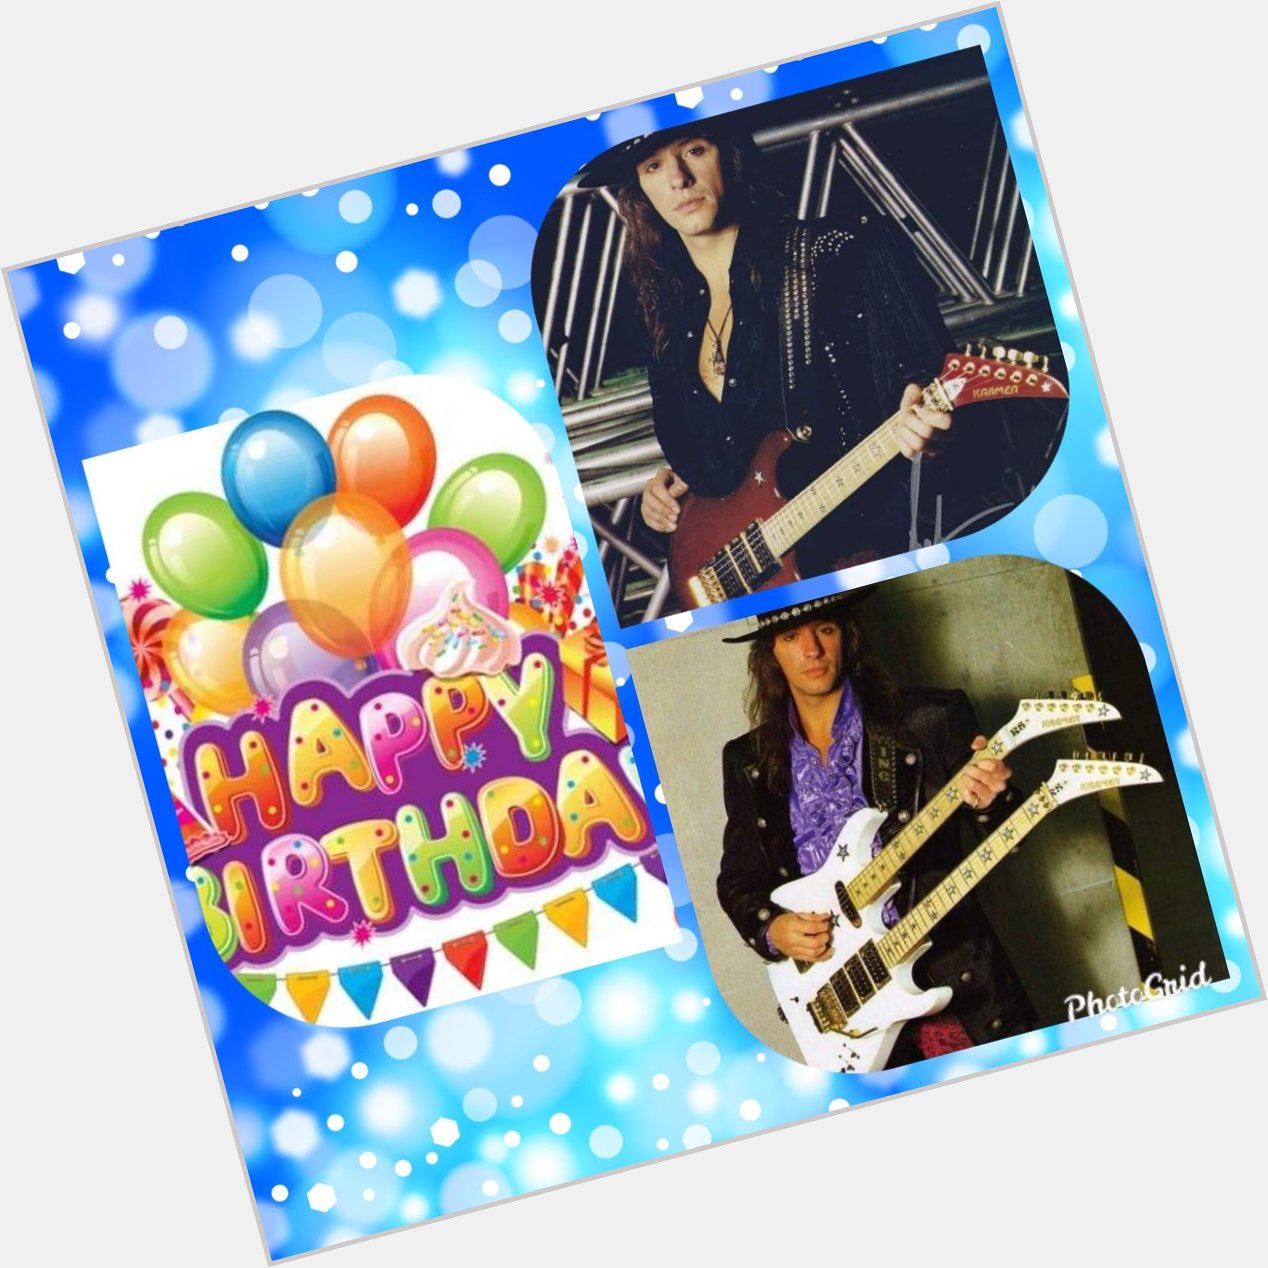    Happy birthday Mr. Richie Sambora.!!     Greetings from Paraguay.!!  